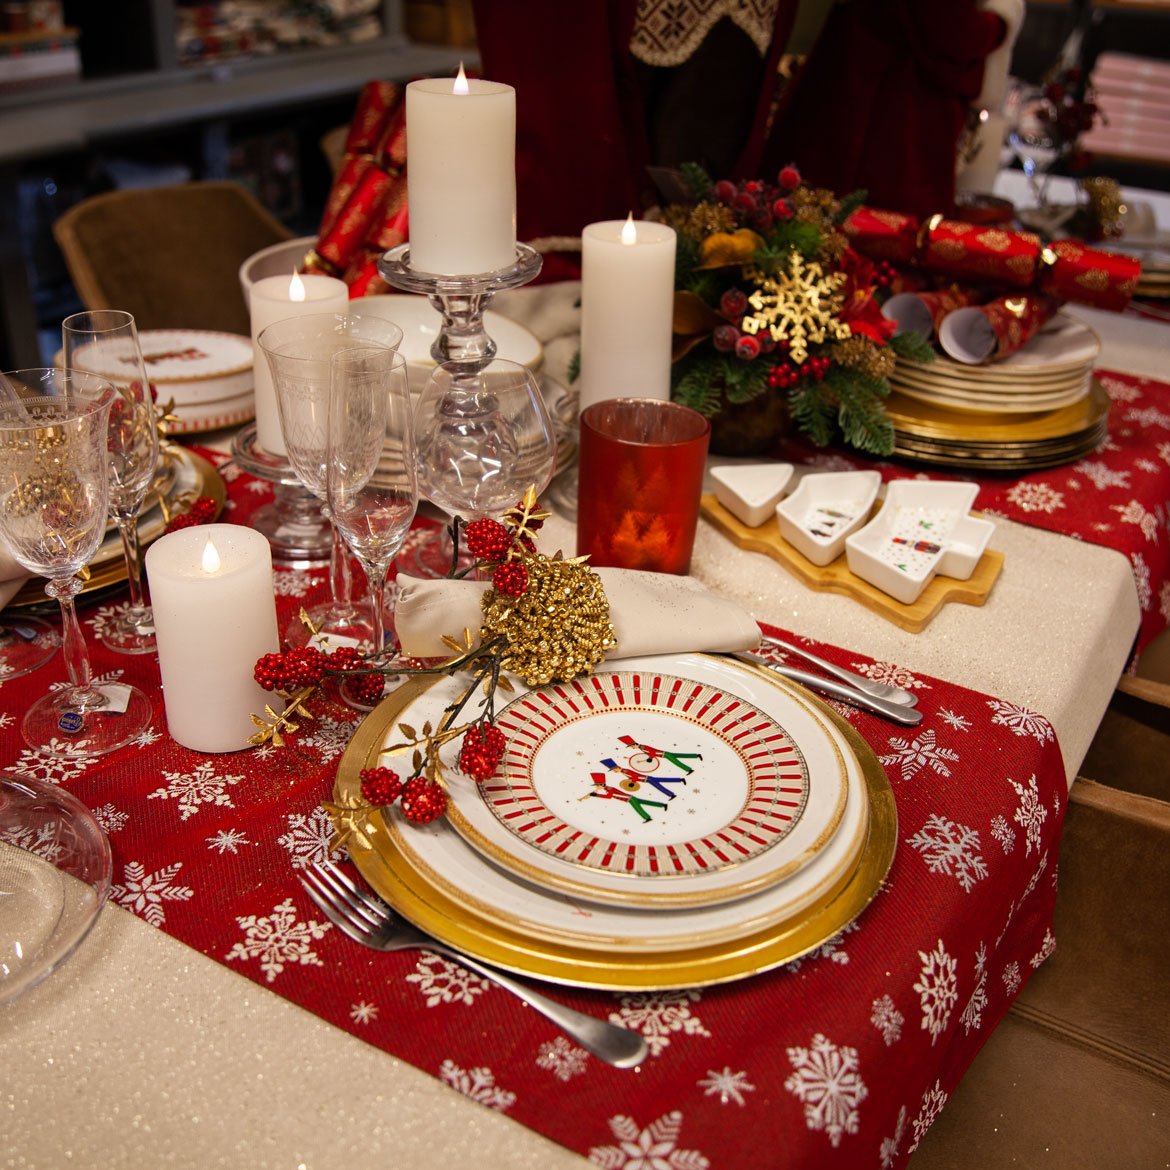 Shop the look - Table de Noël "rouge or" vaisselle blanche et doré